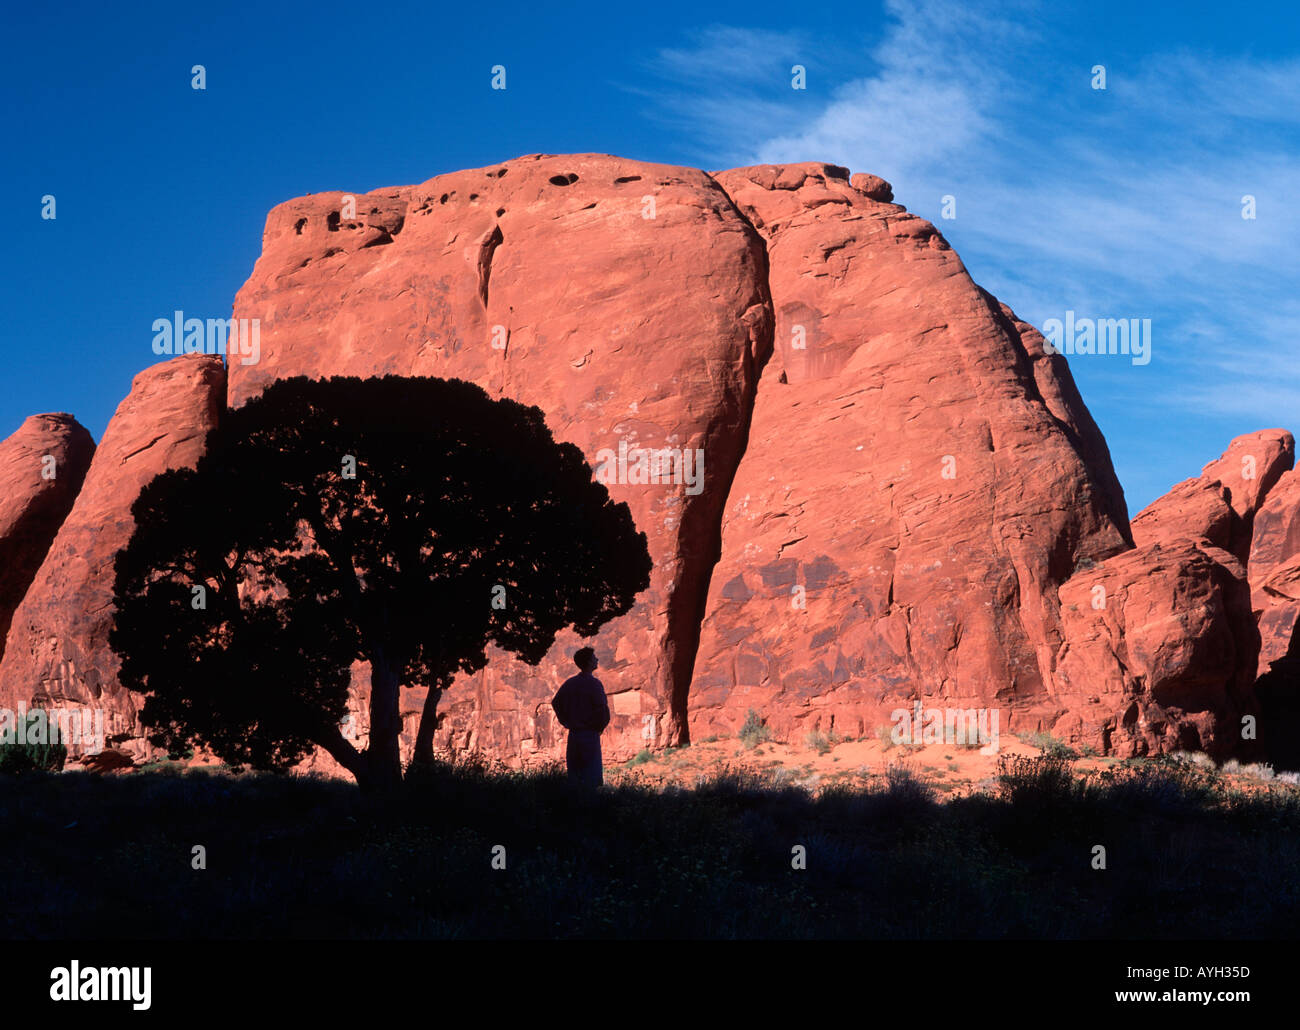 Escursionista si appoggia al di sotto di una shade tree nella parte anteriore di una monolitica roccia arenaria formazione nella Monument Valley in Arizona Utah border Foto Stock